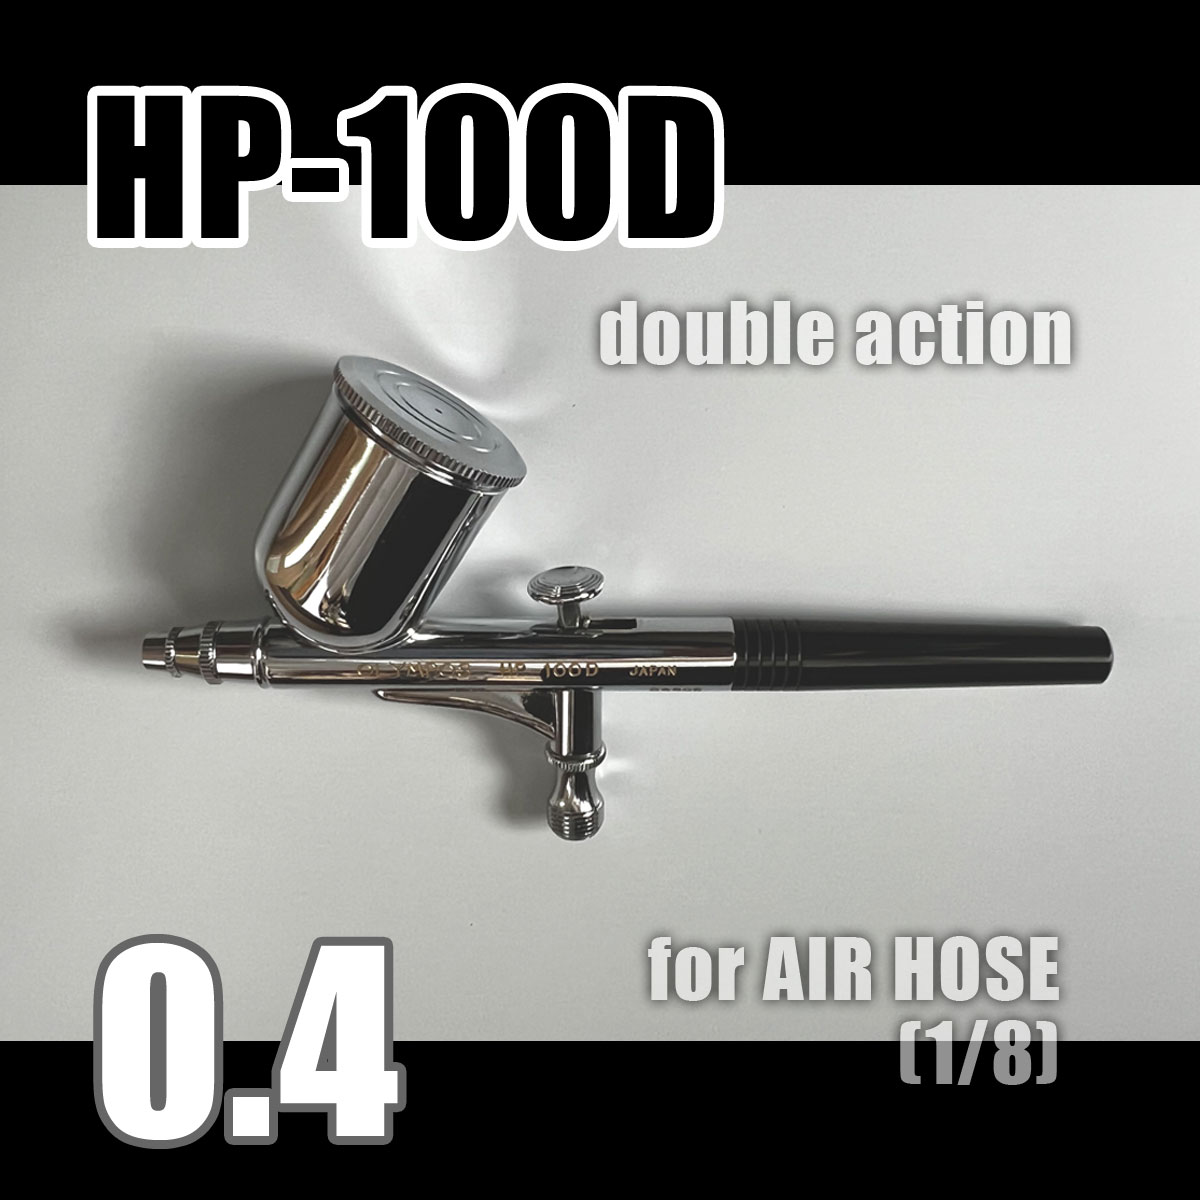 画像3: 【特別価格】【リーズナブルで本格的なAIR缶エアーブラシセット】【本格ダブルアクション HP-100D 付】